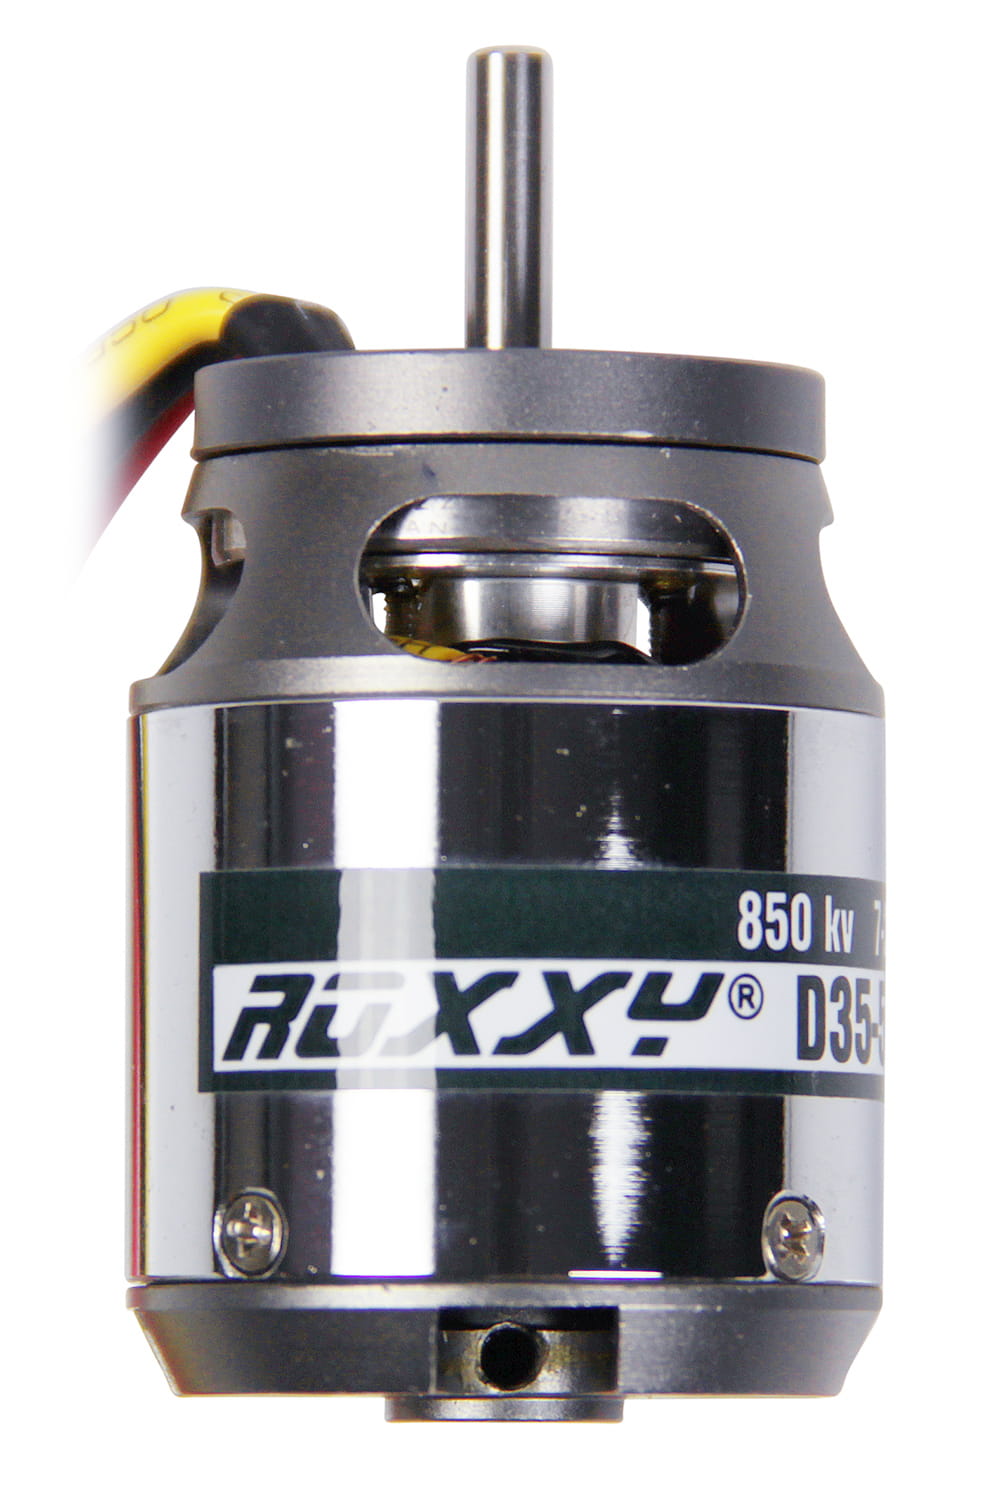 Multiplex ROXXY Brushless Motor BL Outrunner D35-50-850kV